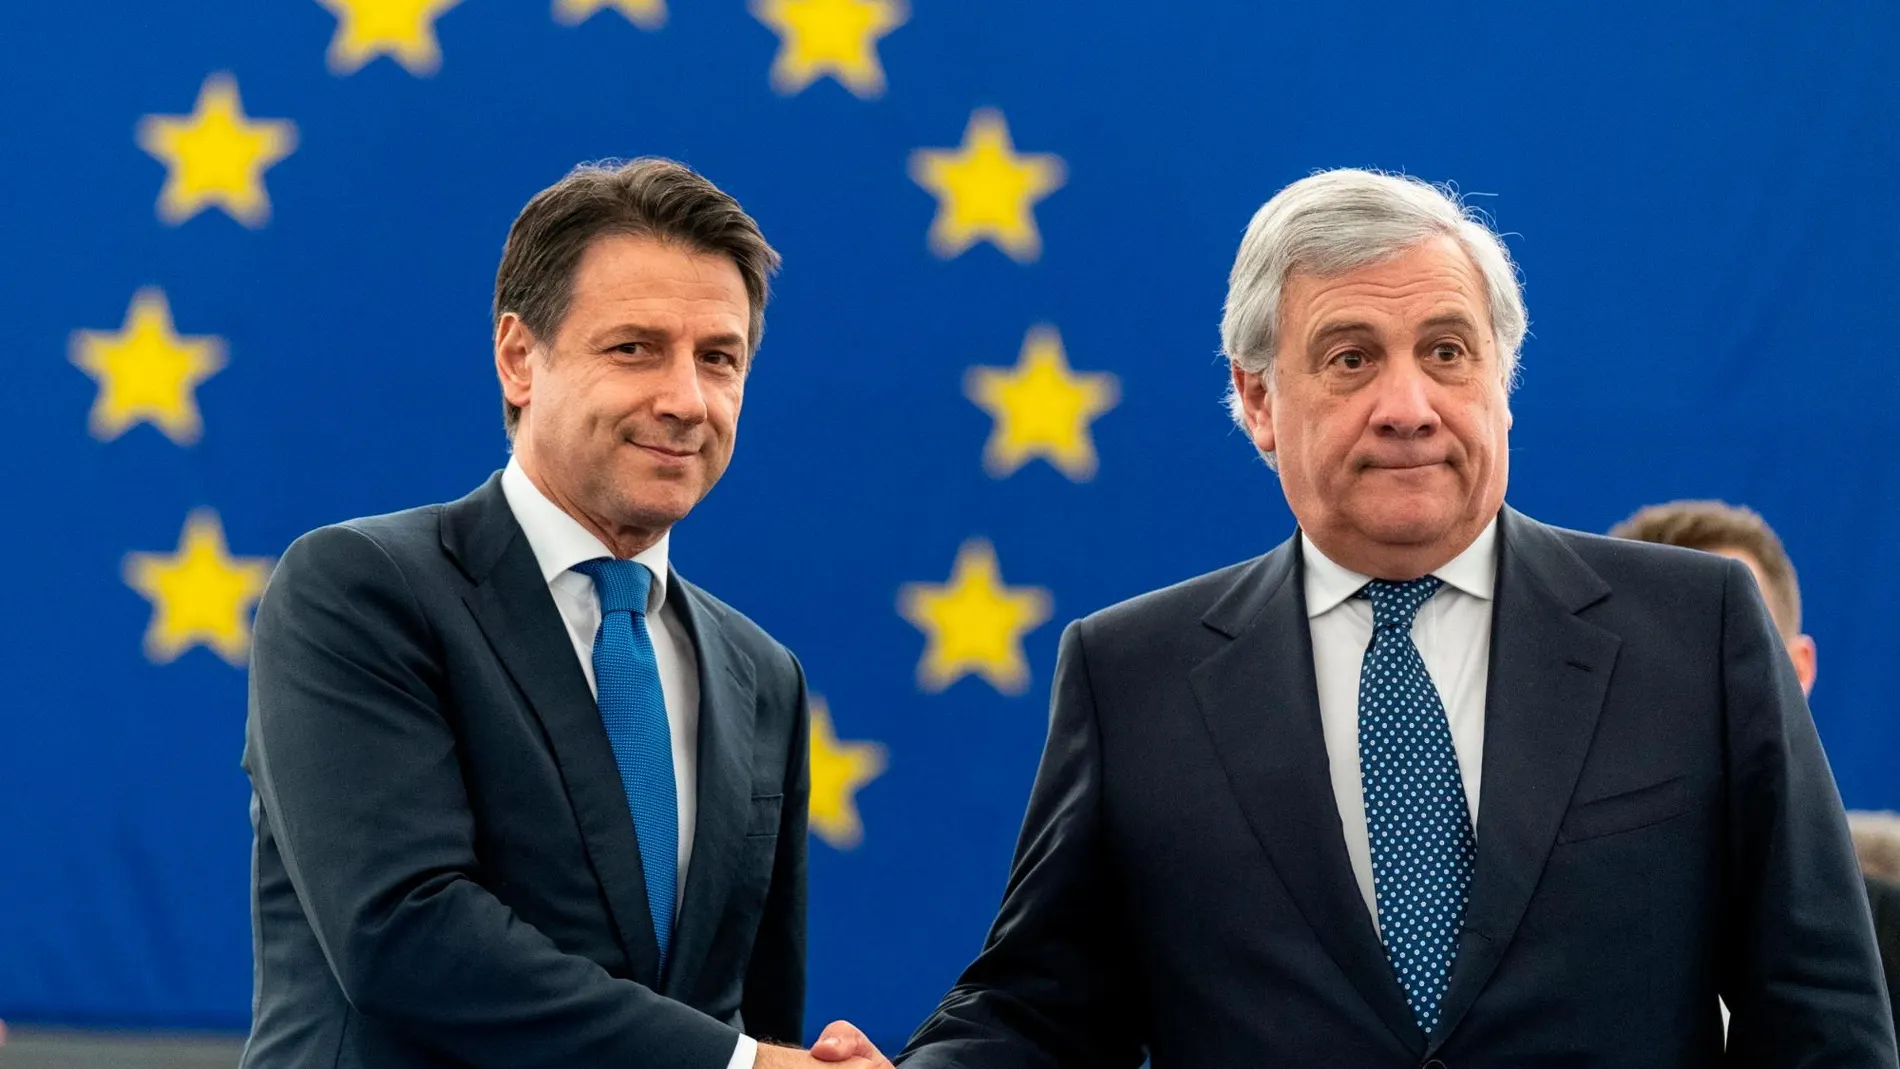 Antonio Tajani (derecha), presidente del Parlamento Europeo, estrecha la mano de Giuseppe Conte, primer ministro italiano